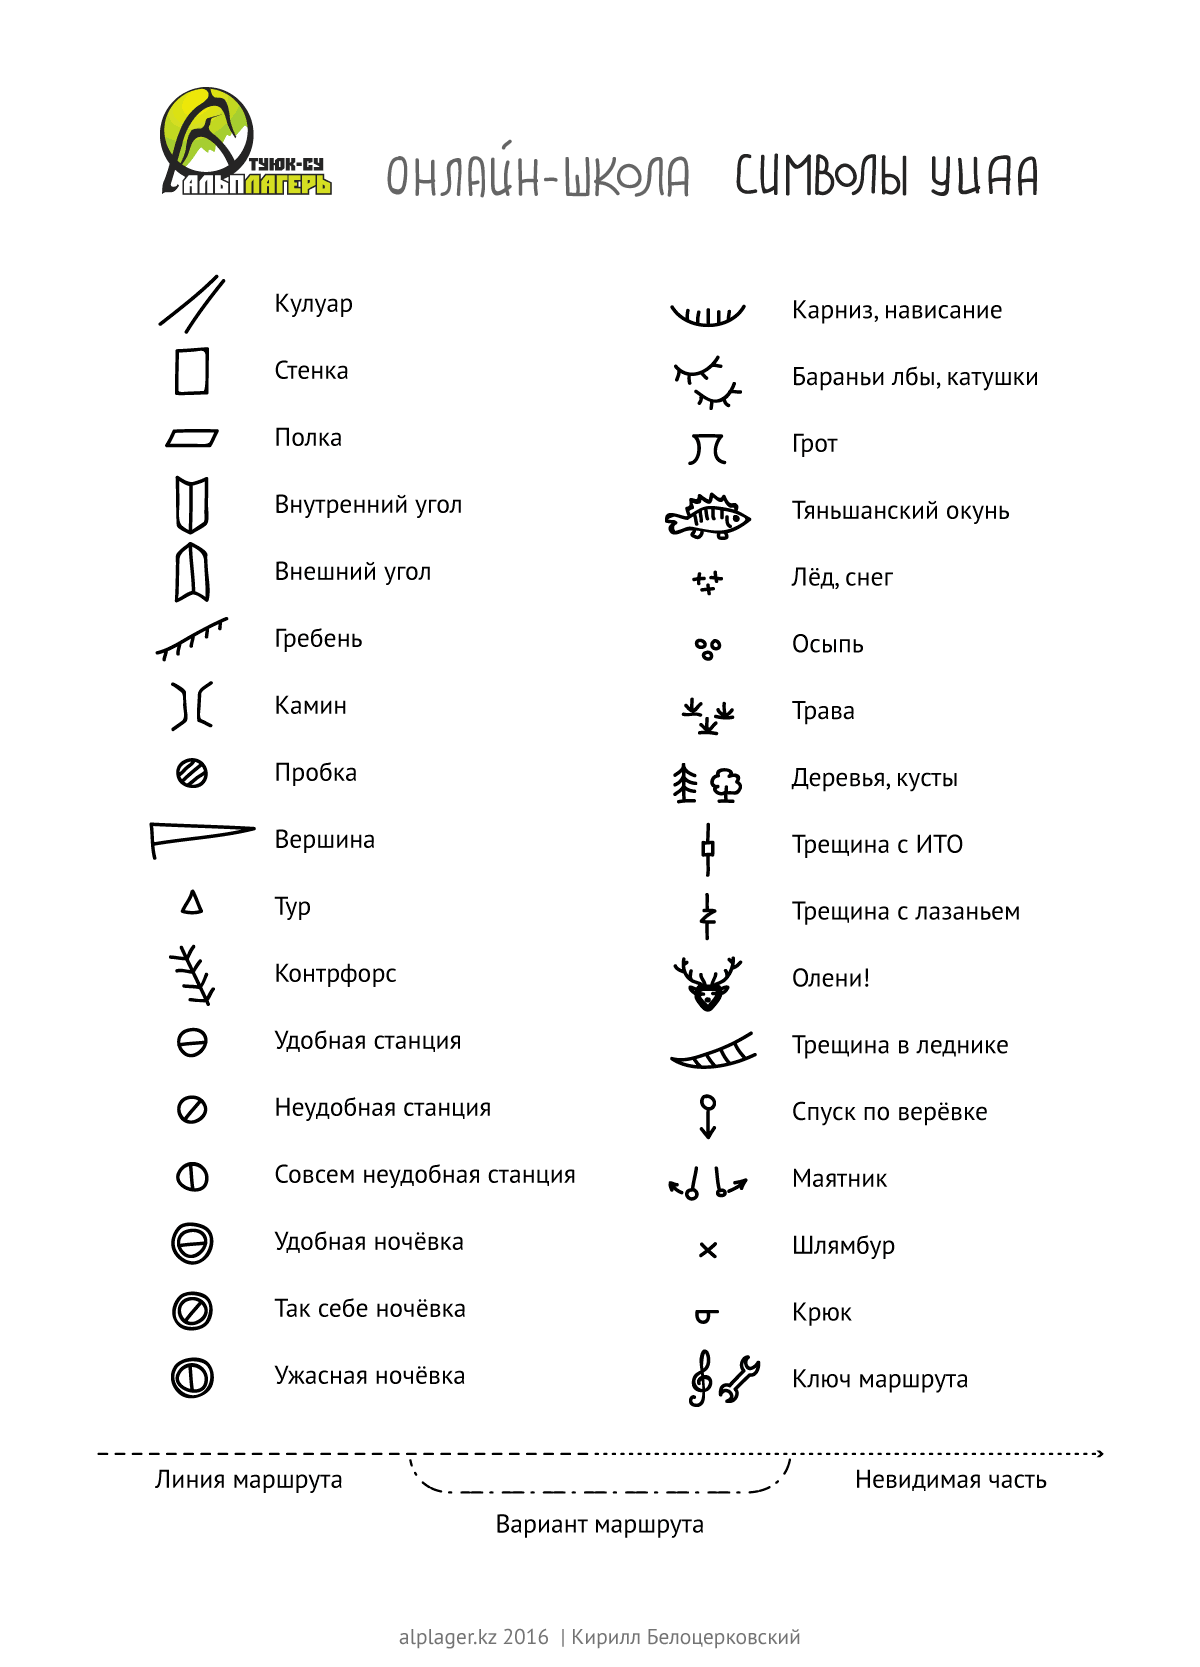 Символы УИАА с окунем